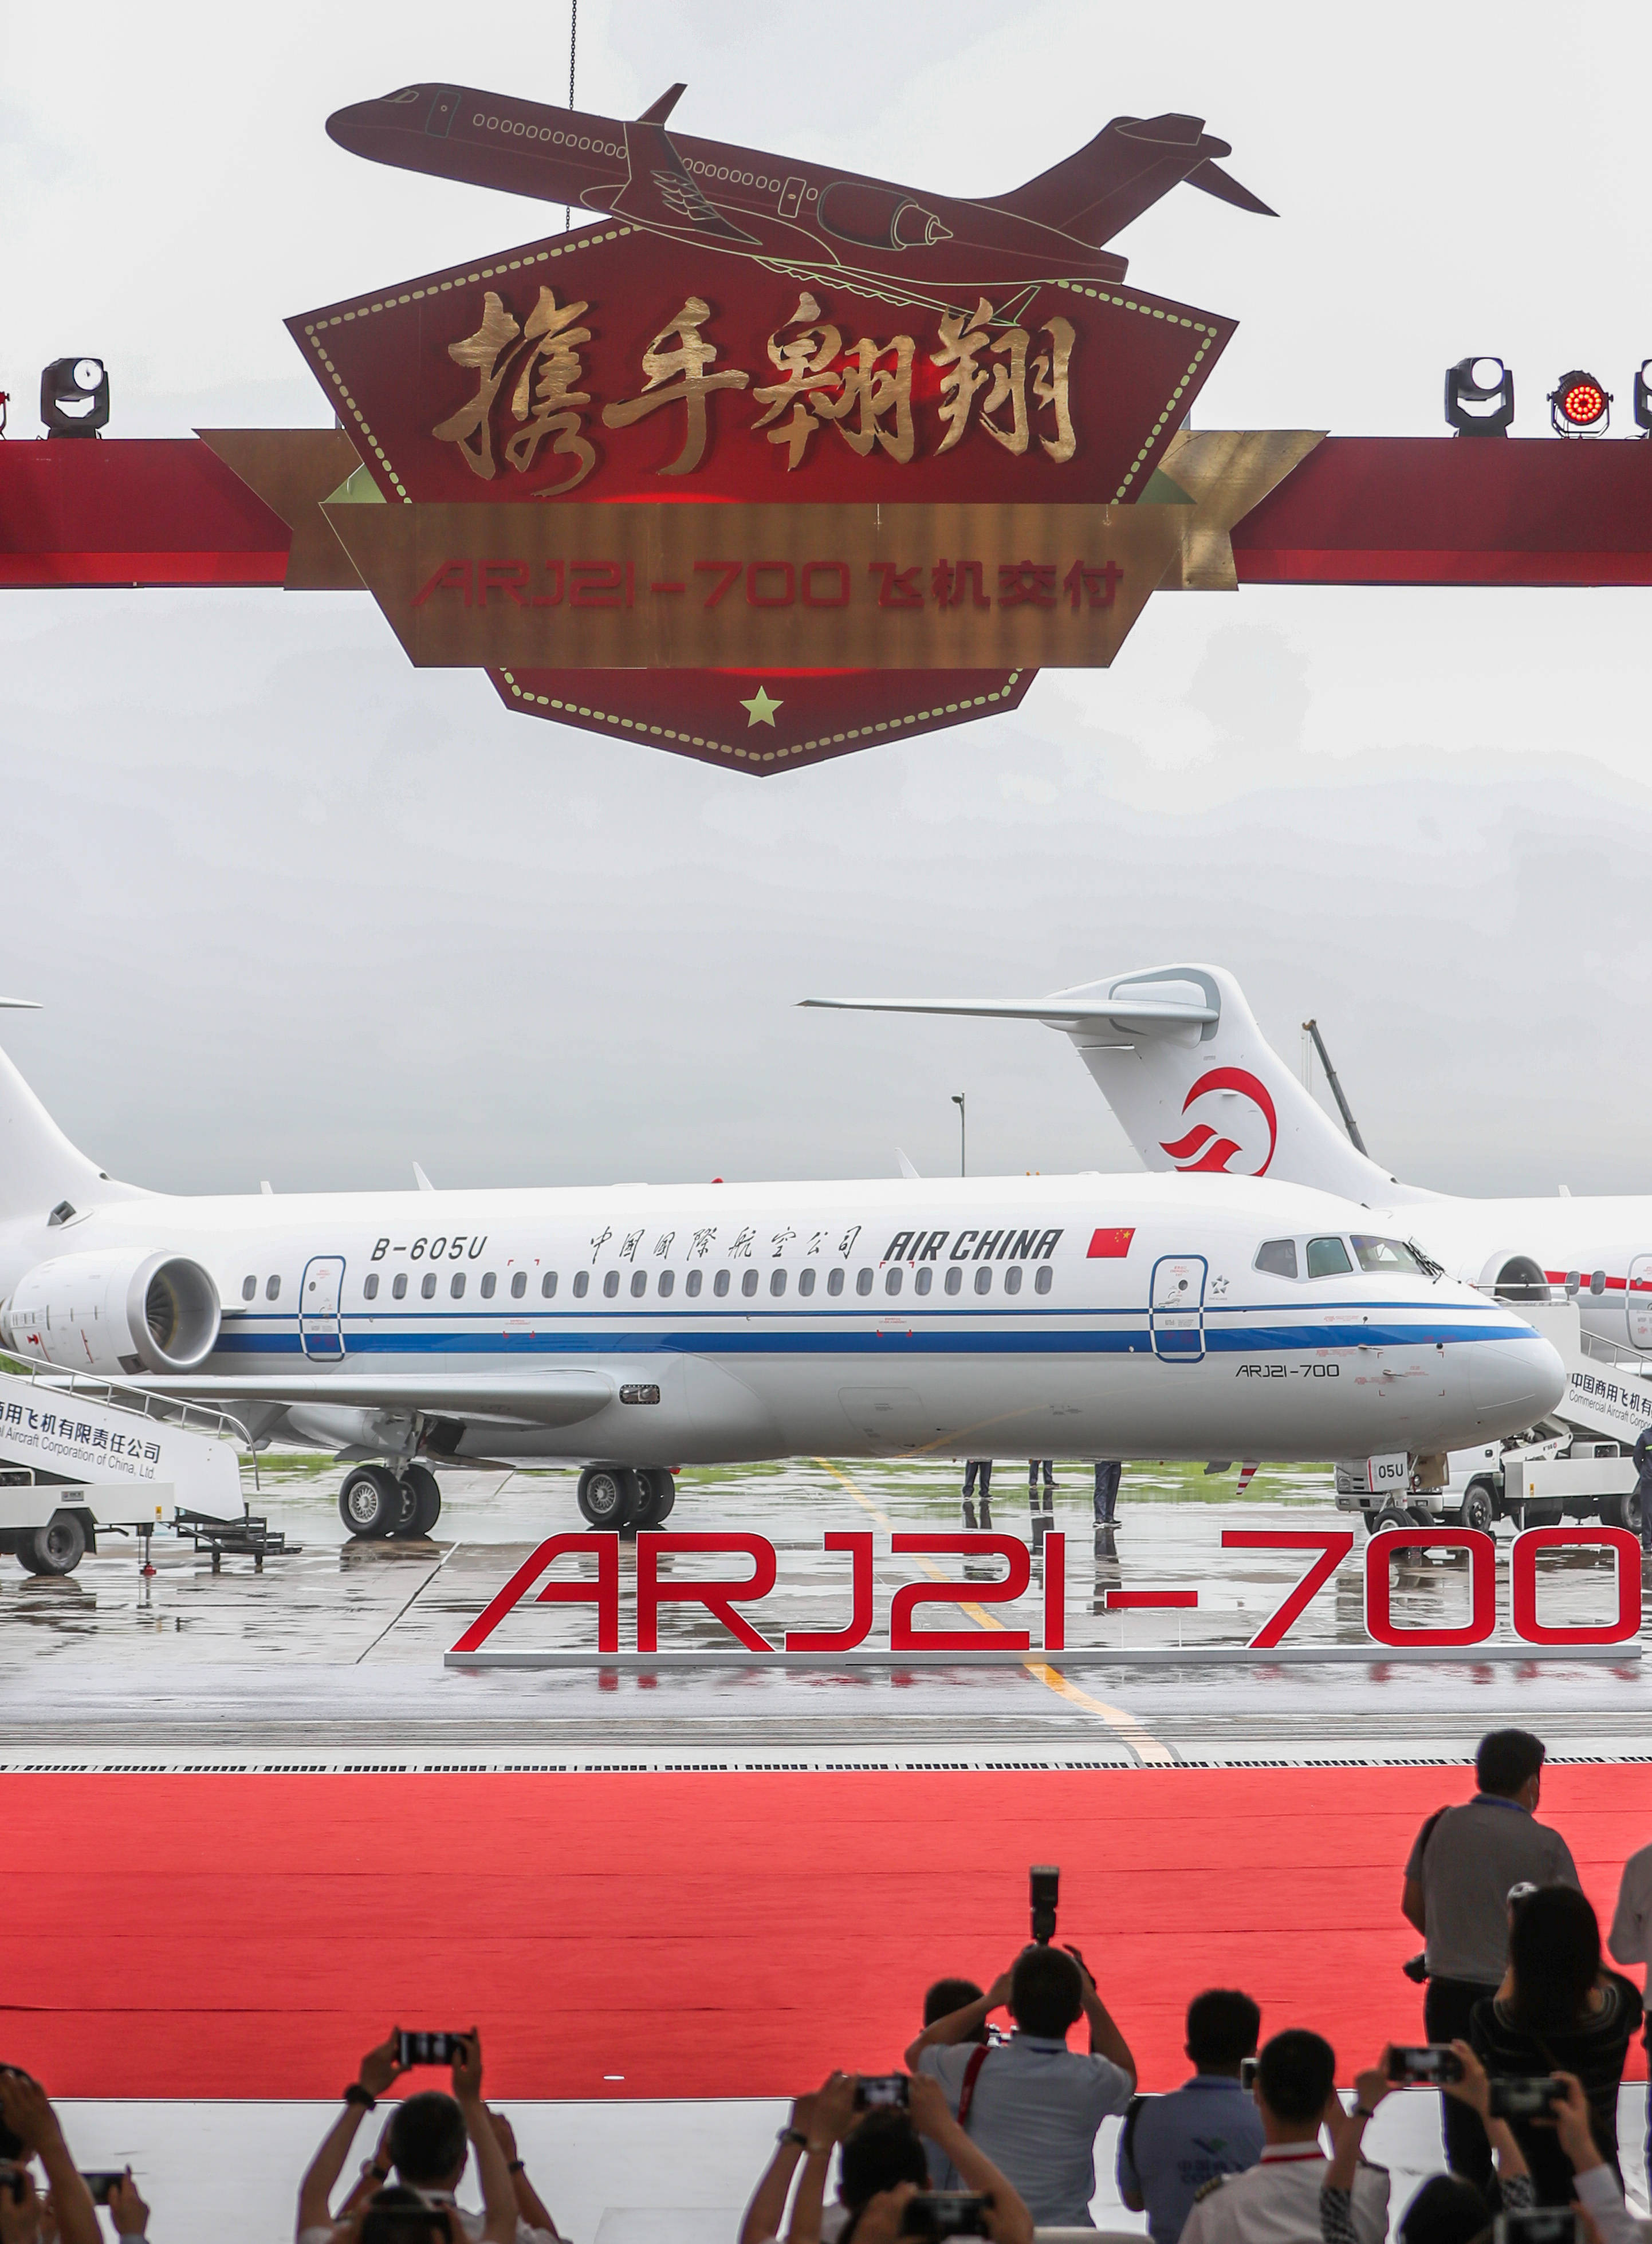 6月28日,三架崭新涂装的国产新支线客机arj21飞机停放在中国商用飞机